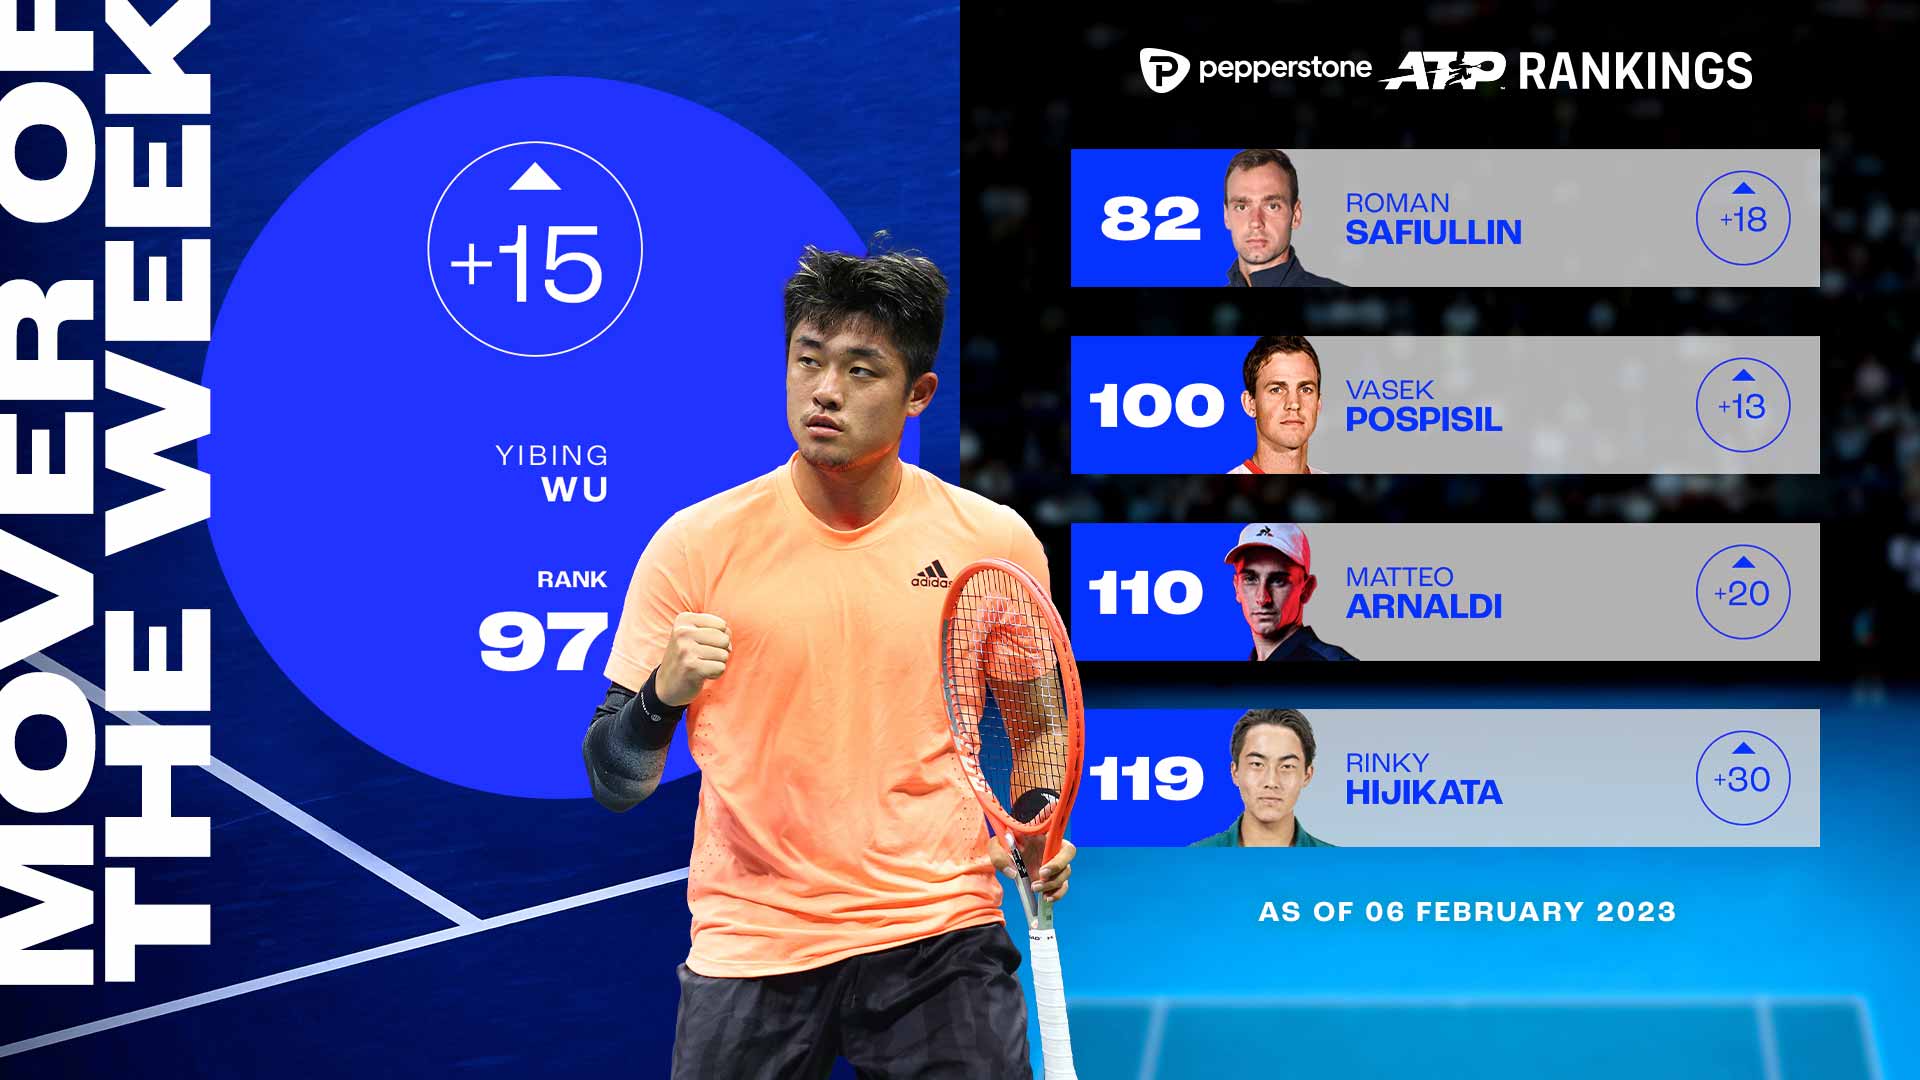 Wu Yibing asciende hasta el No. 97 del Pepperstone ATP Rankings esta semana.